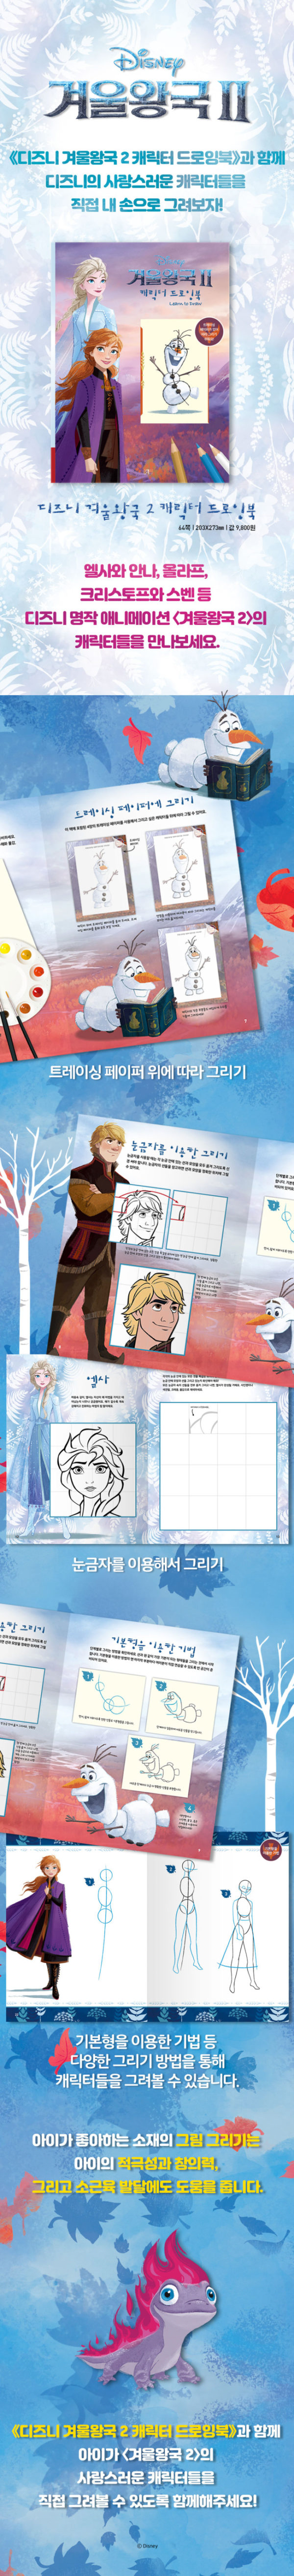 アナと雪の女王2 キャラクタードローイングブック DISNEY ディズニー ディズニーストアー 通販 販売